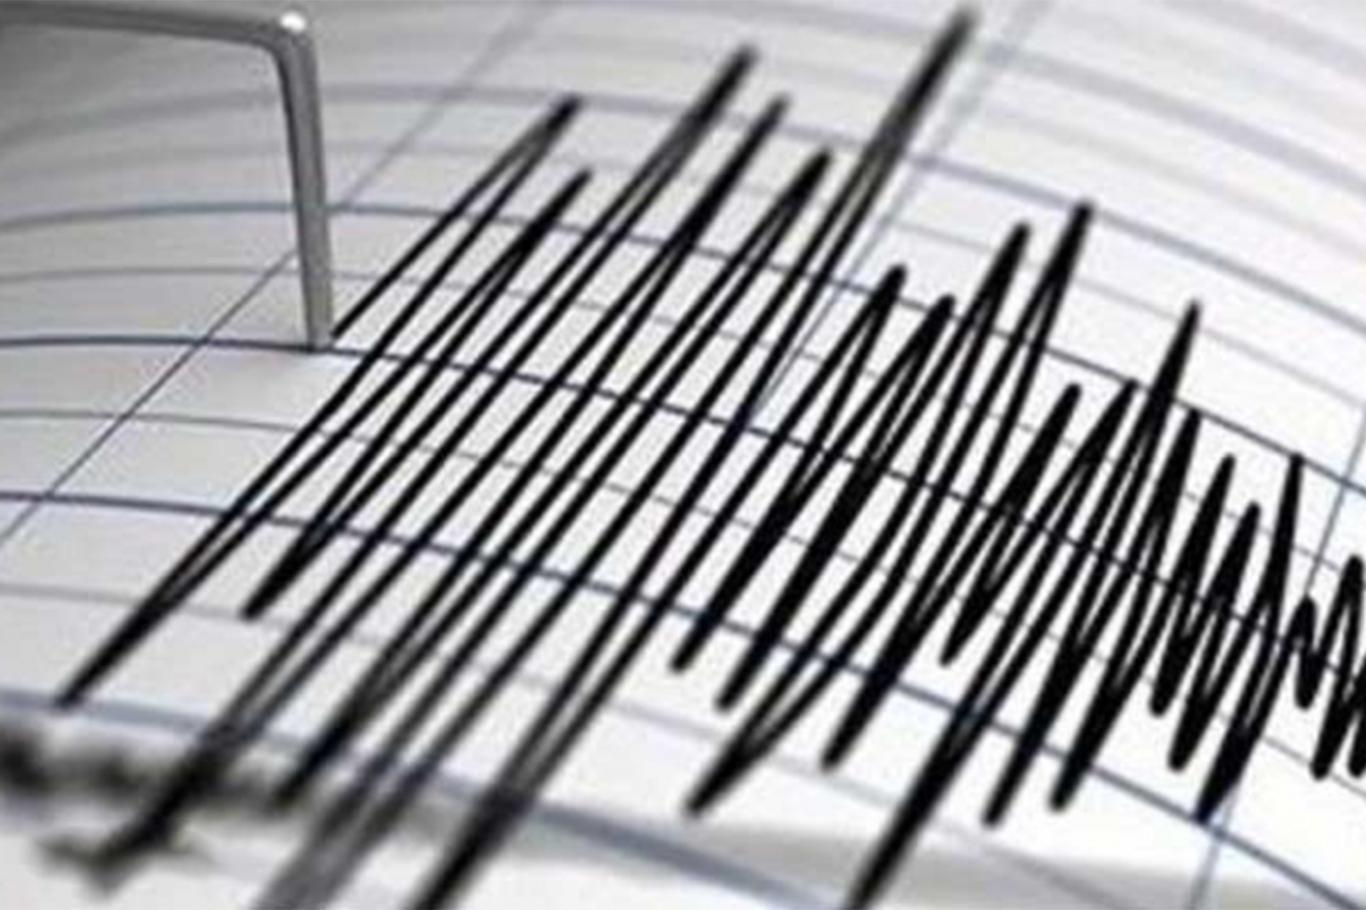 Elâzığ’da 3,8 büyüklüğünde deprem